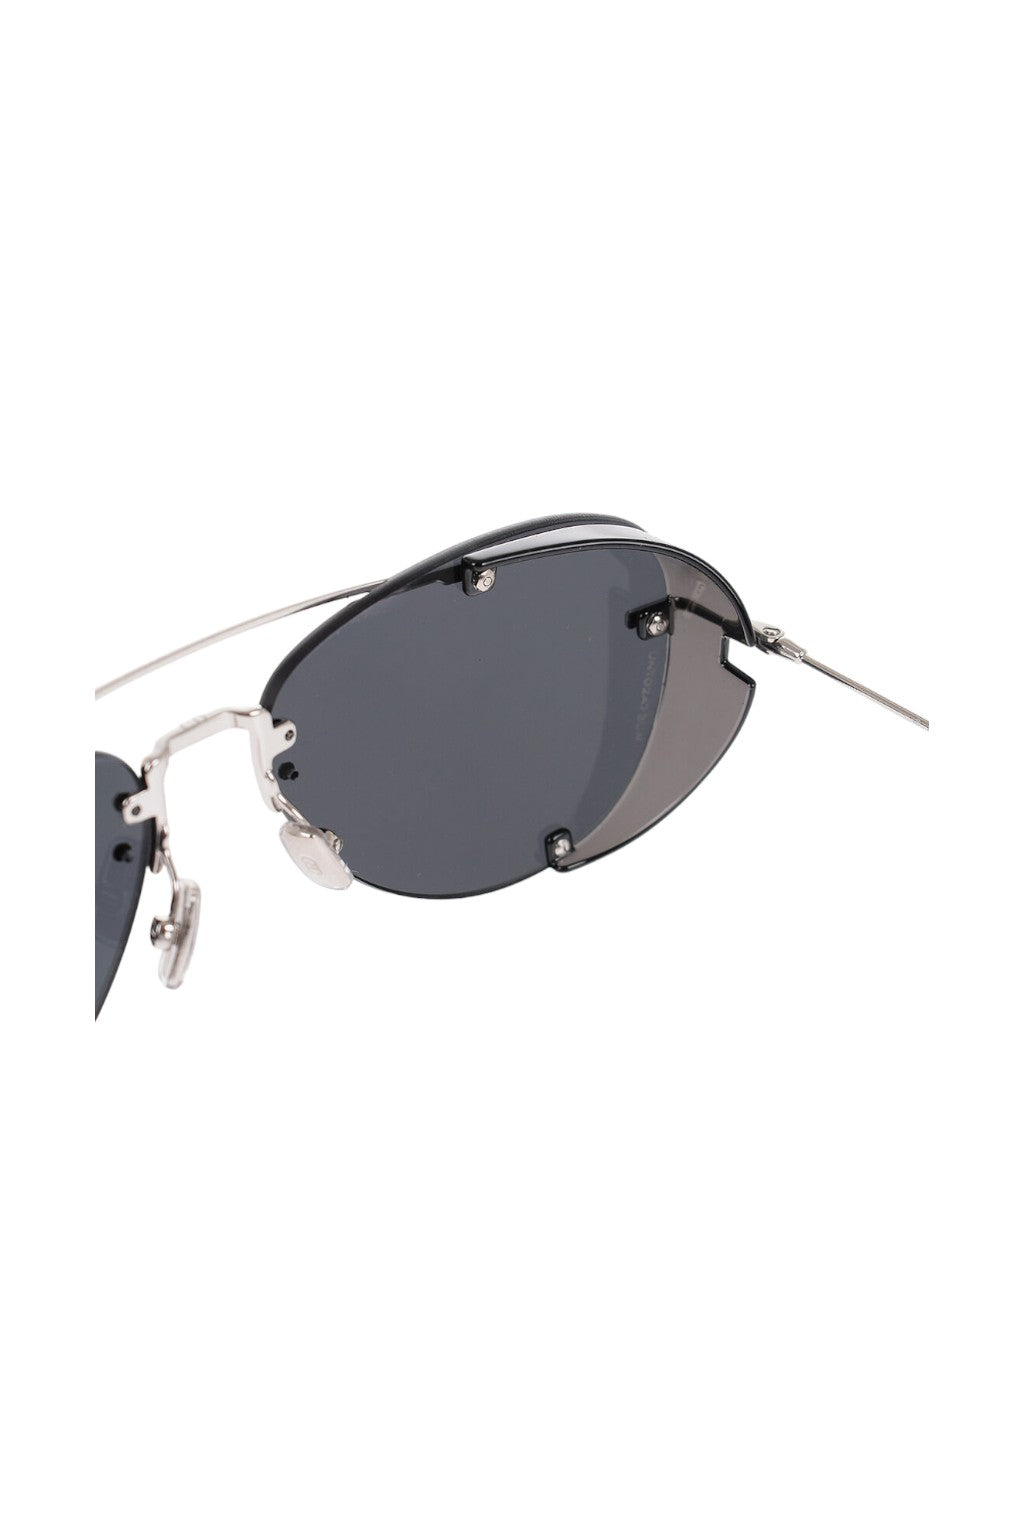 Dior Aviator Chroma 1 Metal Frame Sunglasses